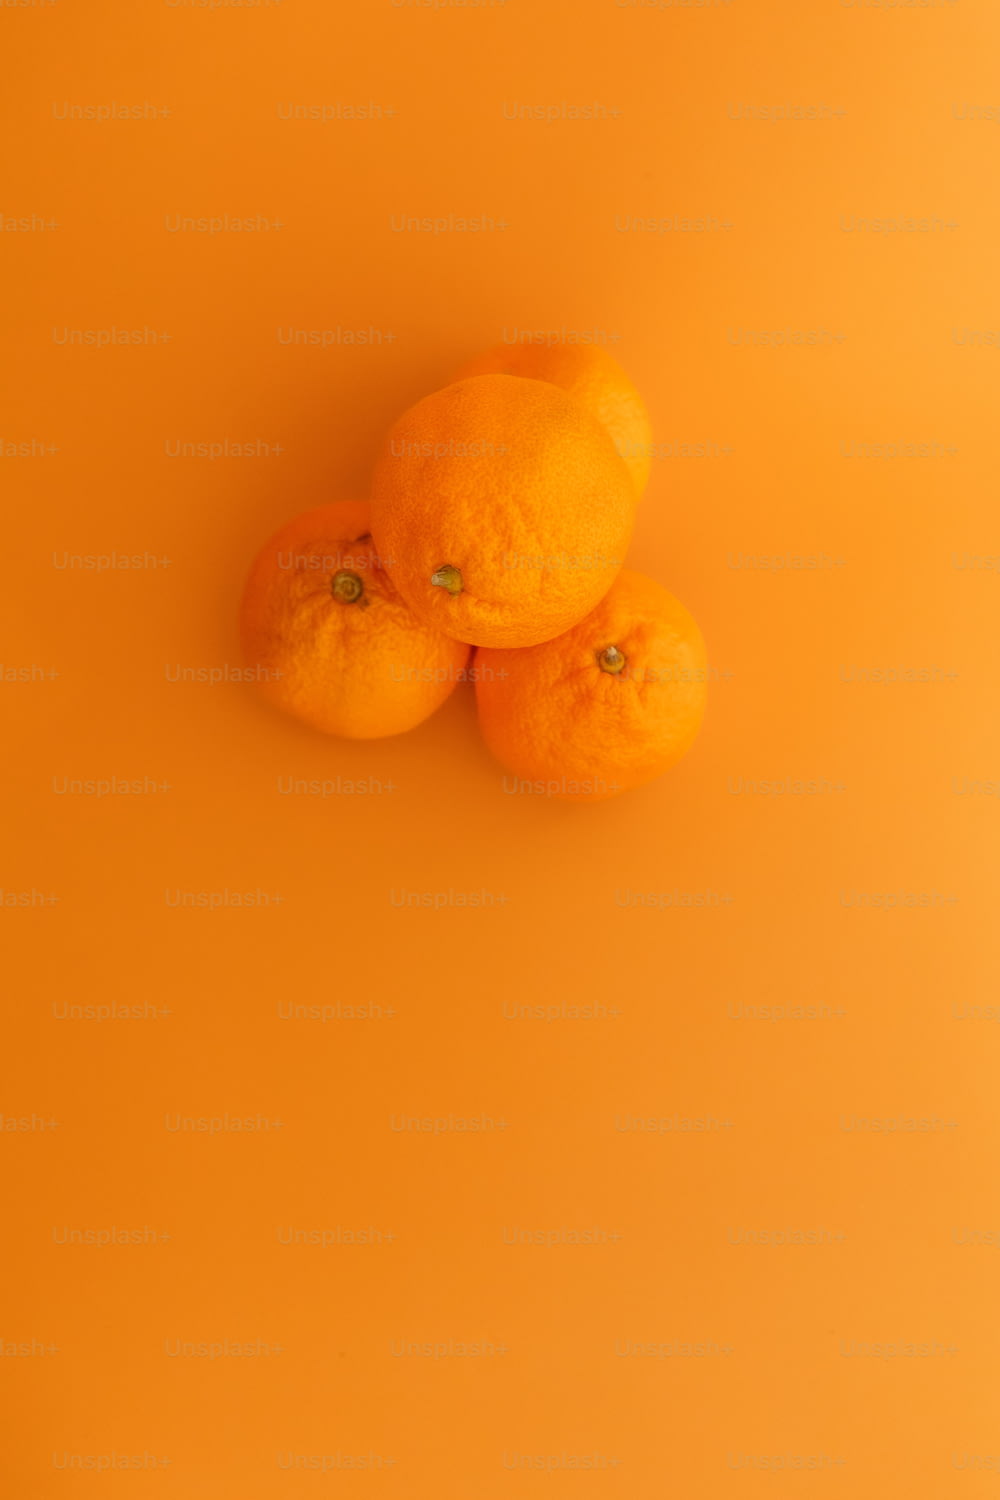 drei Orangen sitzen auf einer gelben Oberfläche